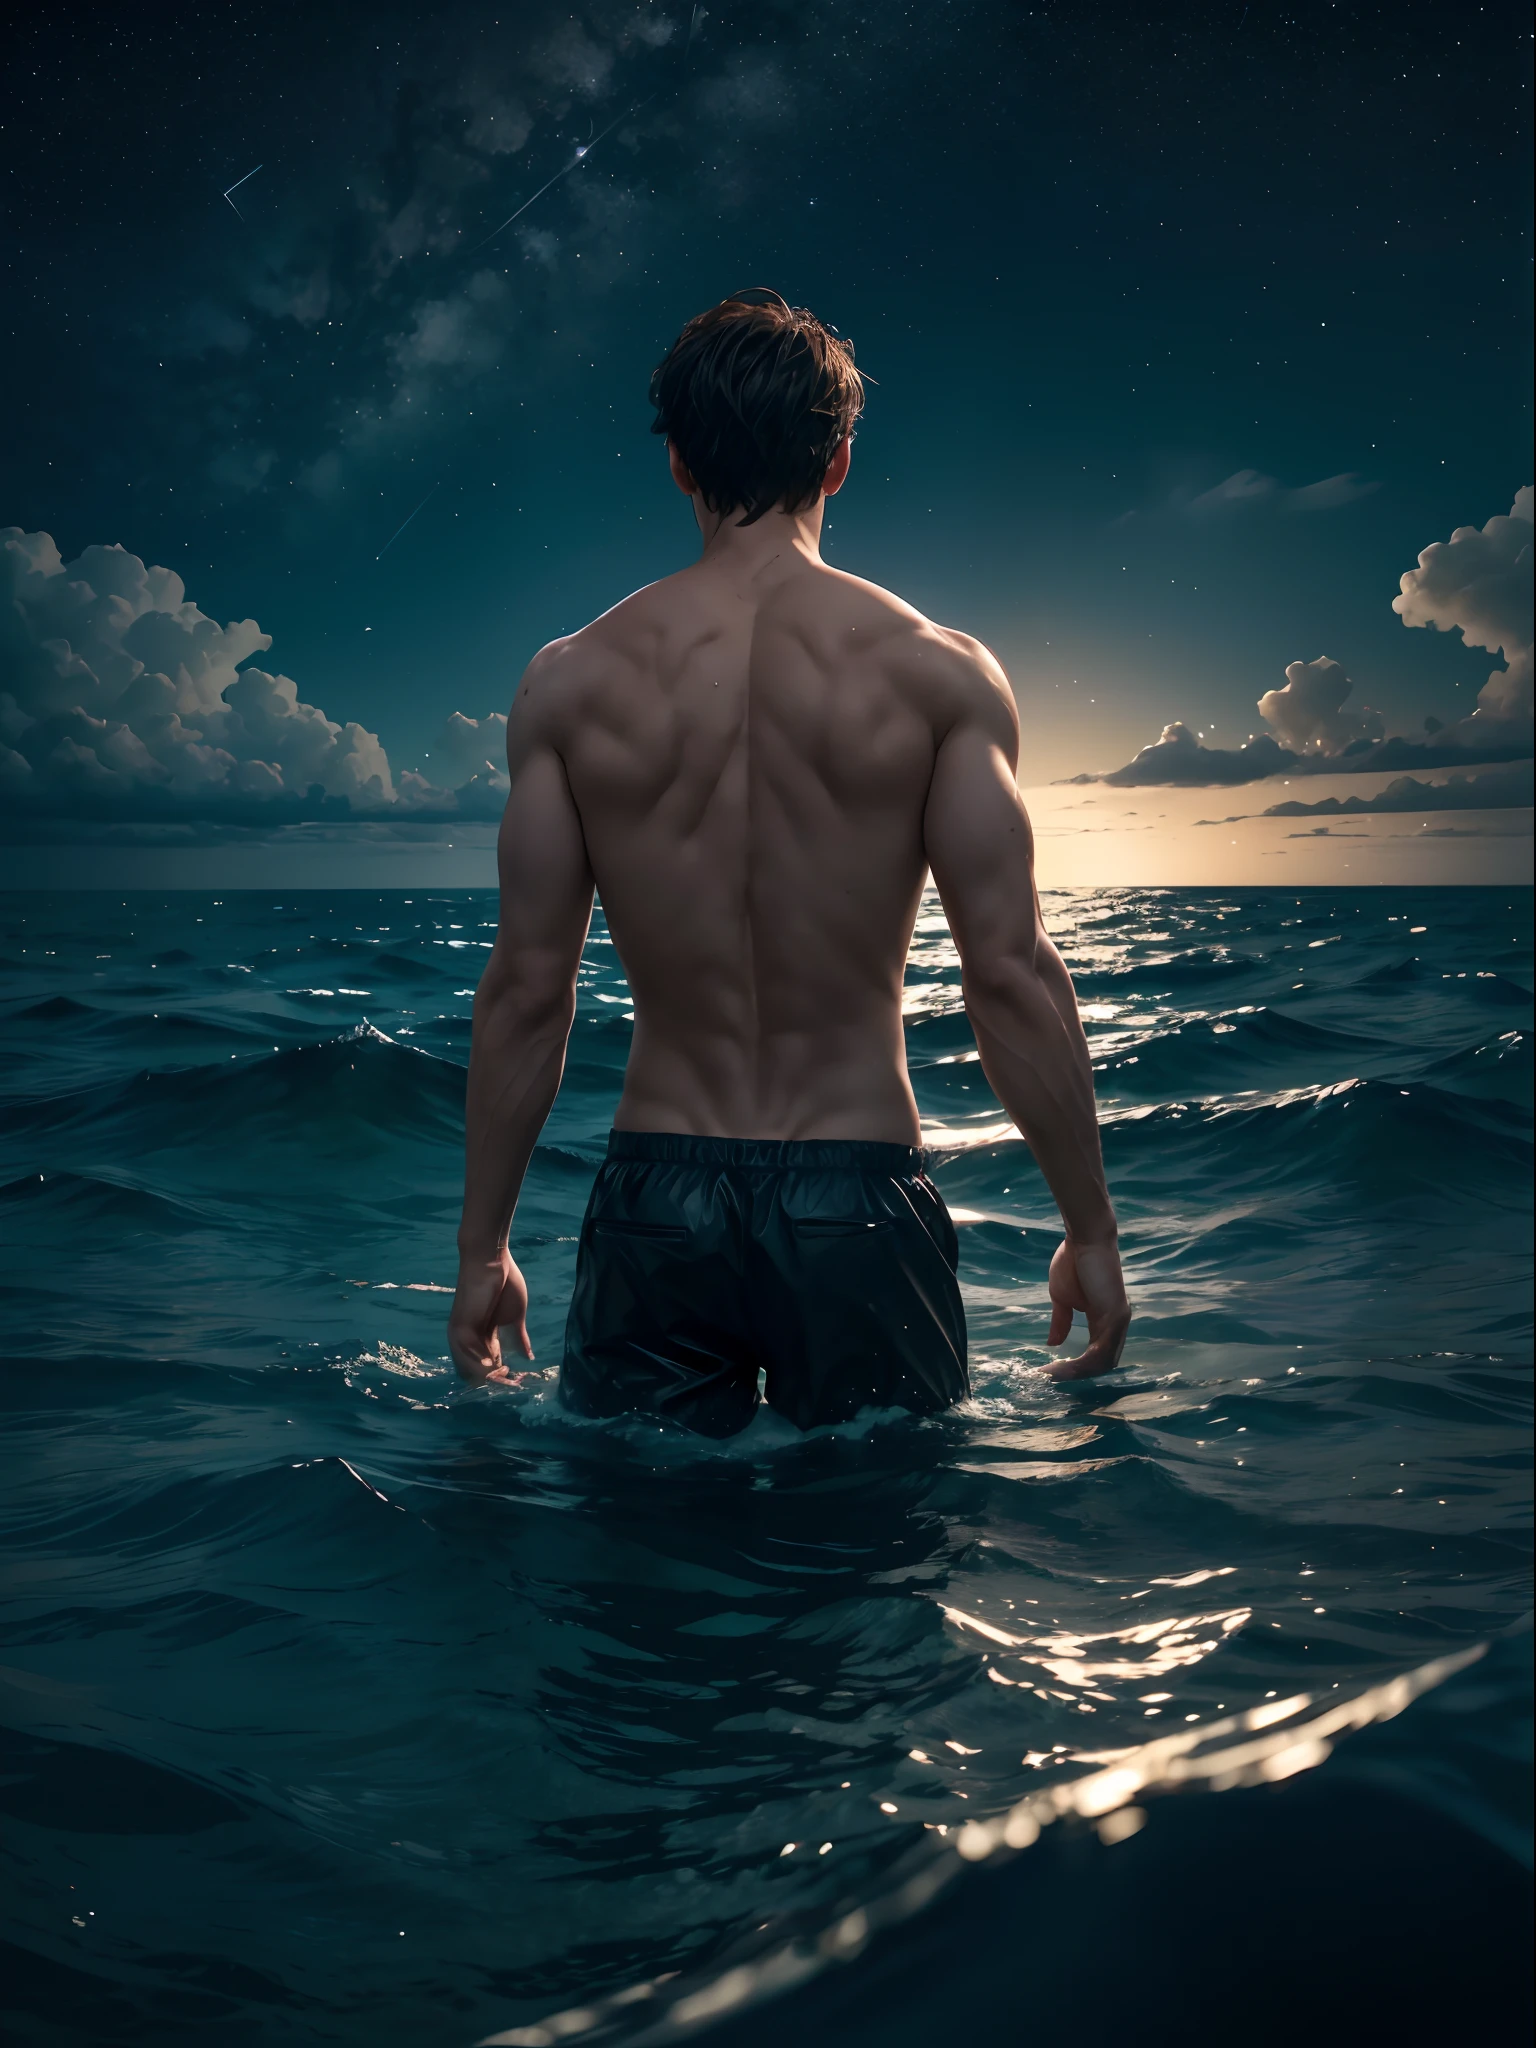 Ein Mann, In einem Meer, mit der Hälfte seines Körpers im Wasser, hinter einem Sternenhimmel mit einem Mond in der Mitte